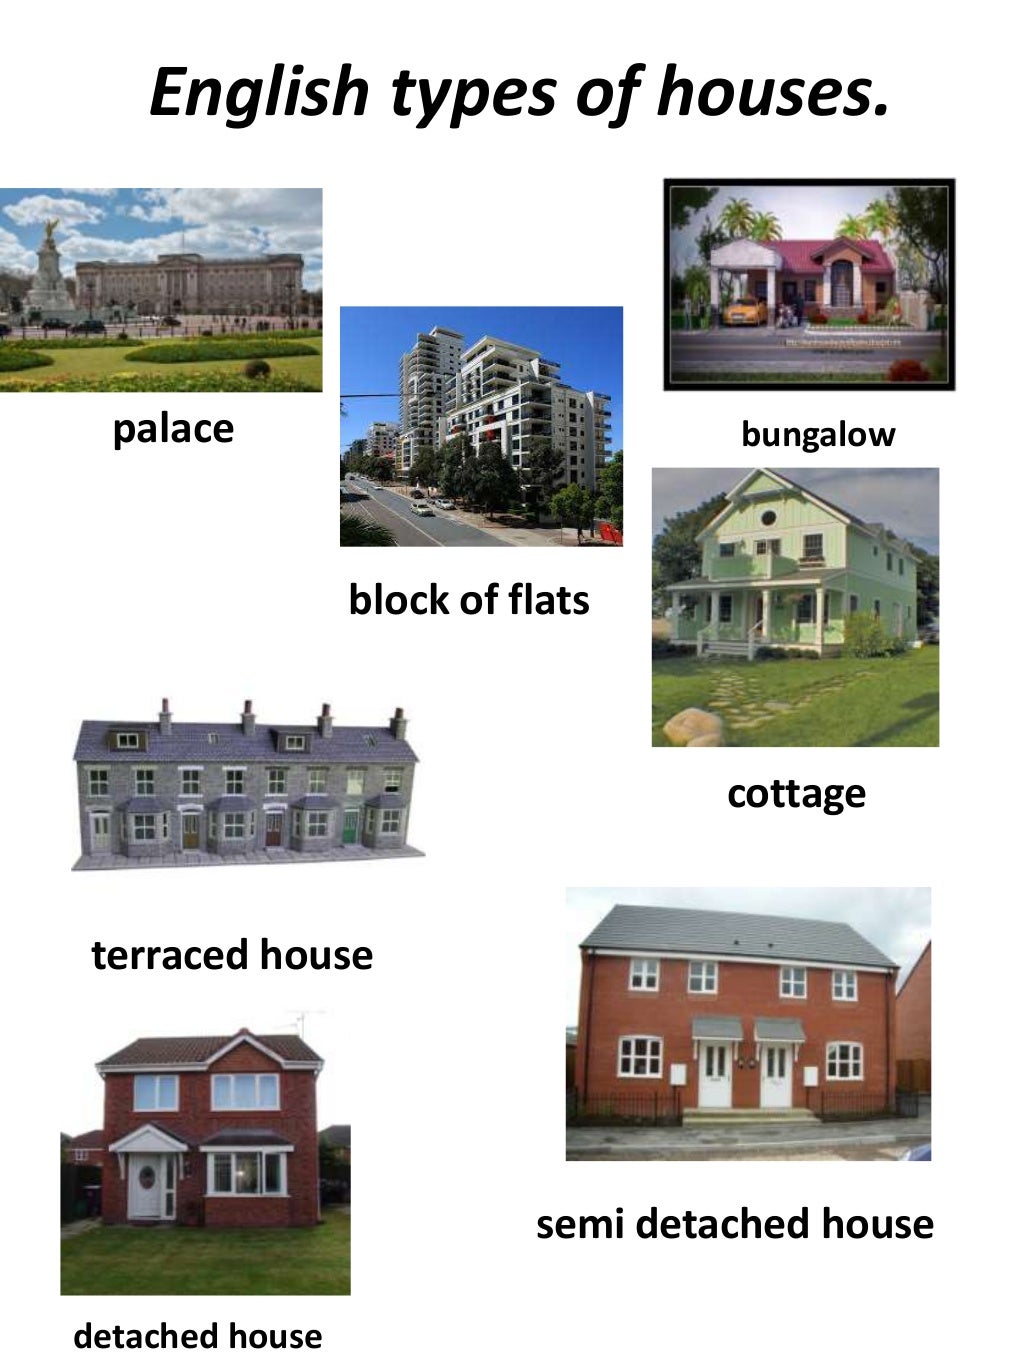 Название домов на английском